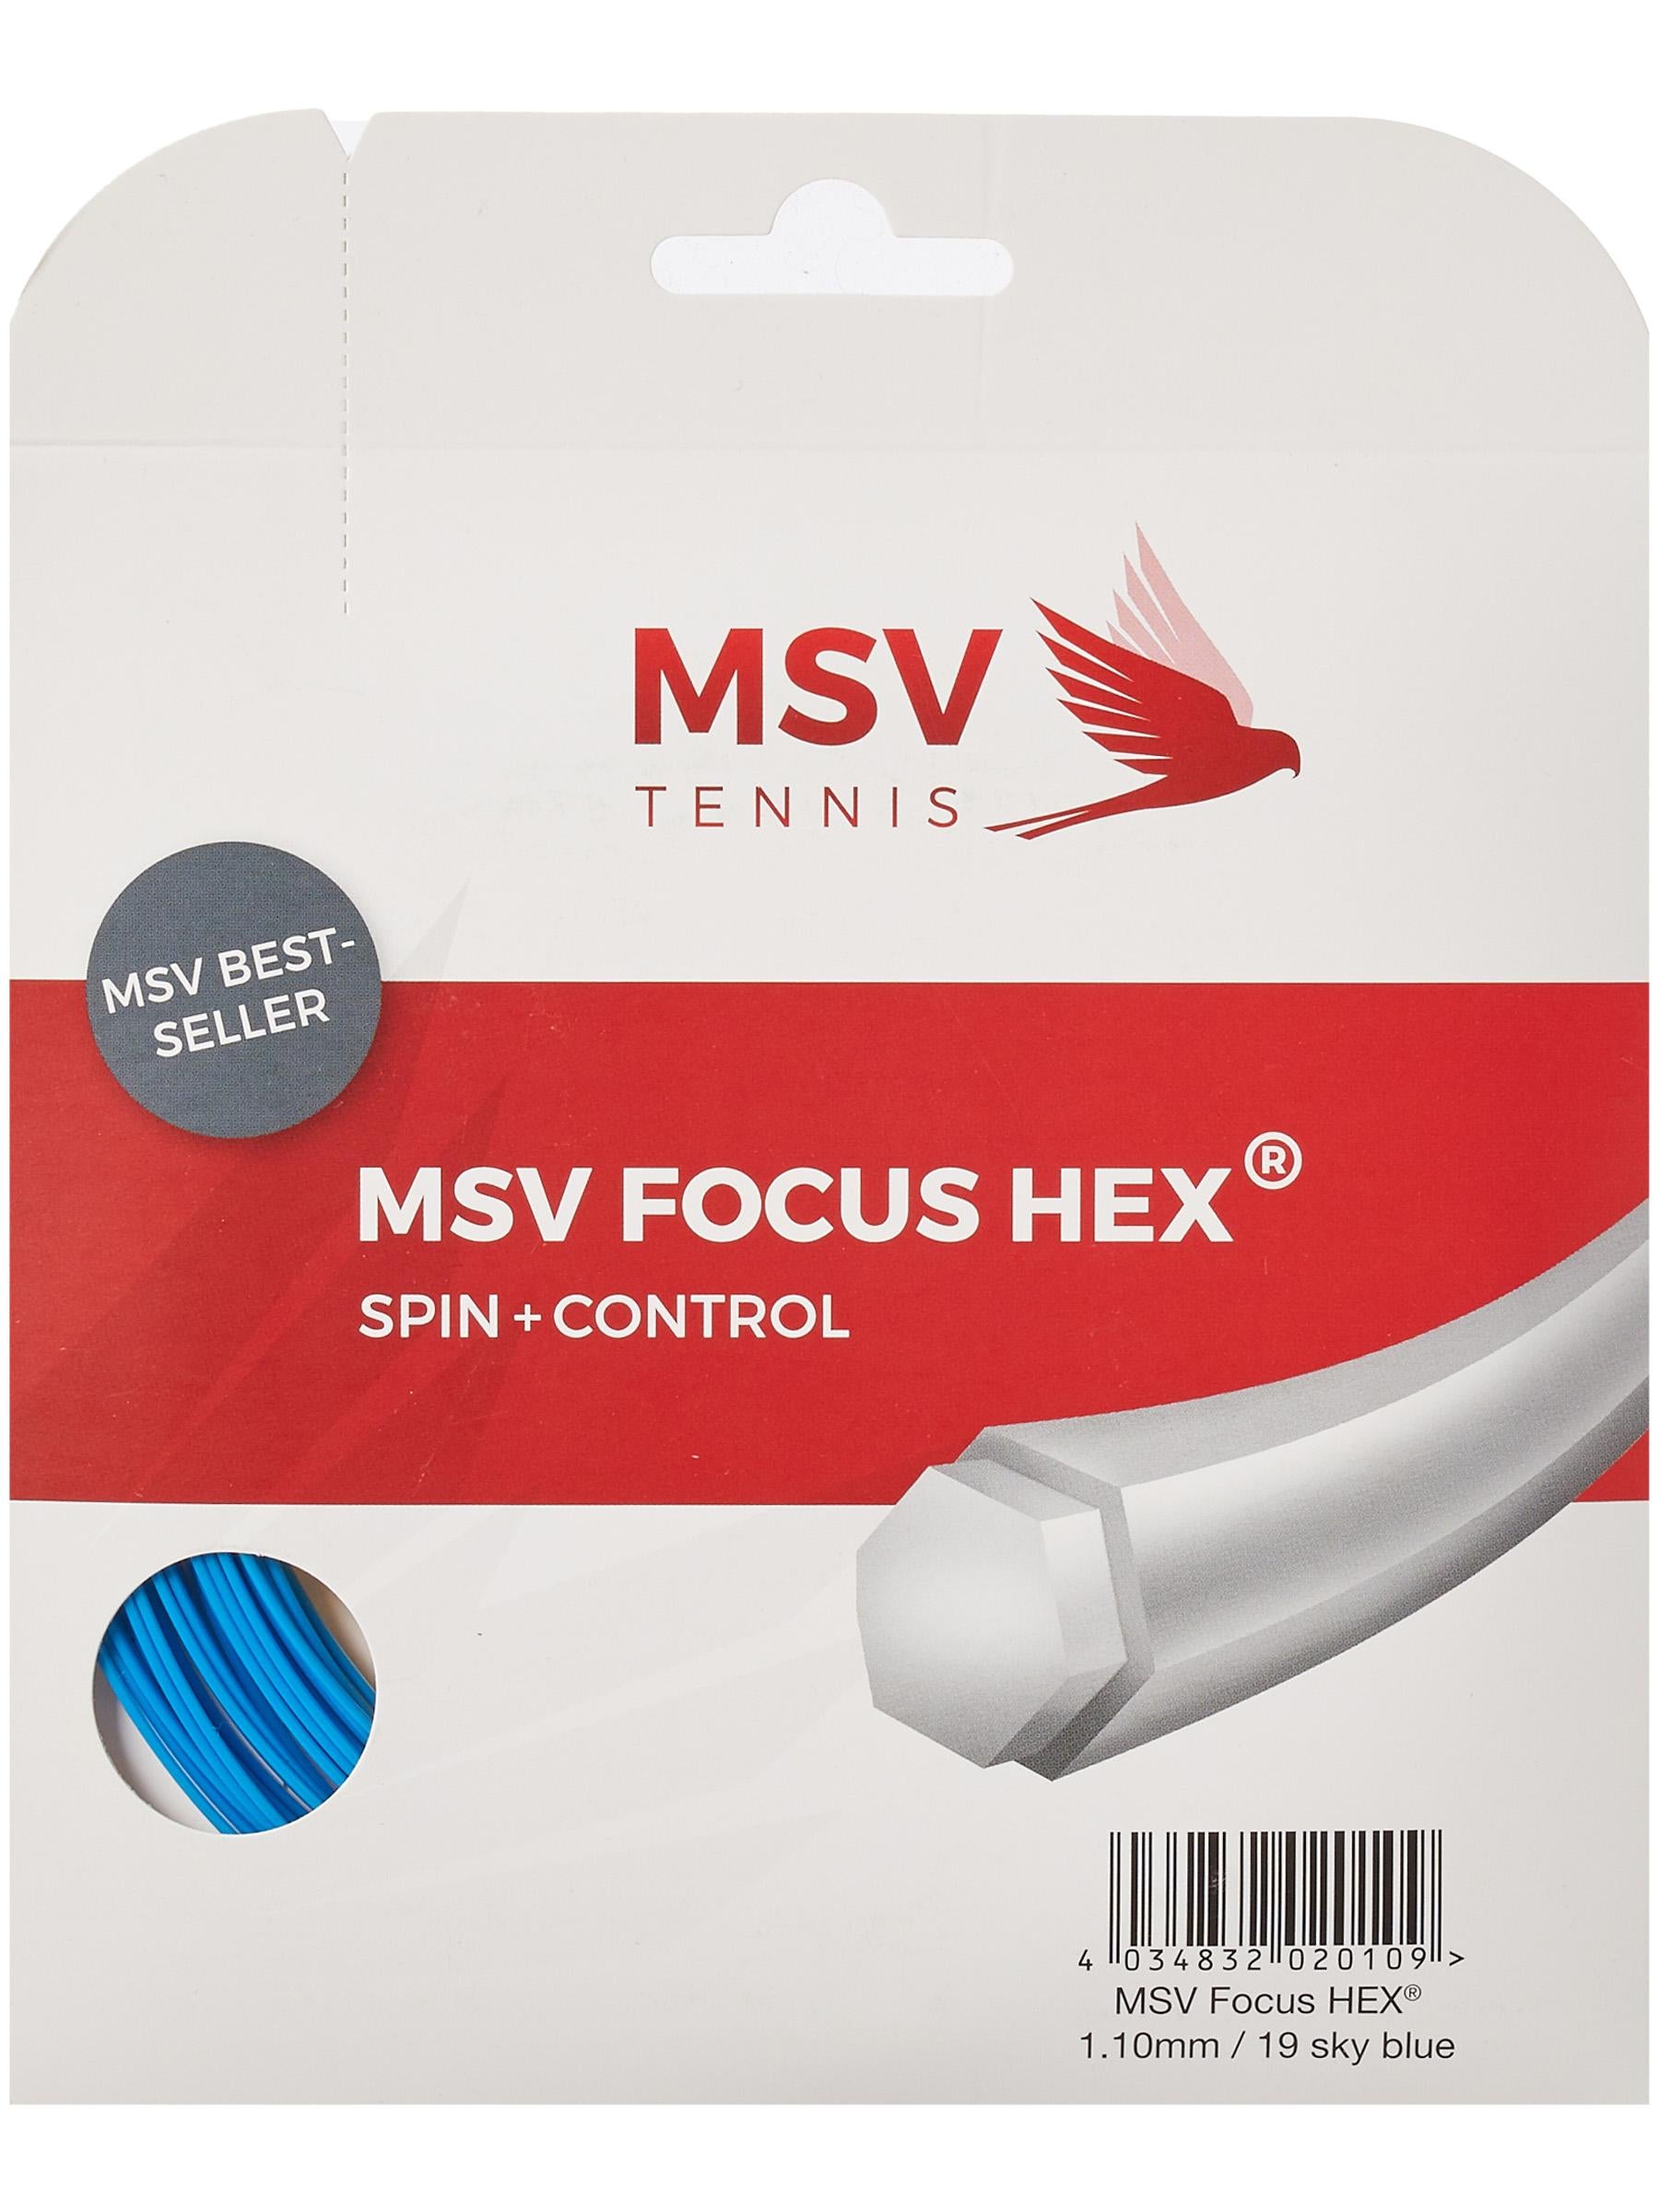 MSV Focus-Hex Soft 200M Schwarz Tennis Saitenrolle 200m Schwarz NEU 